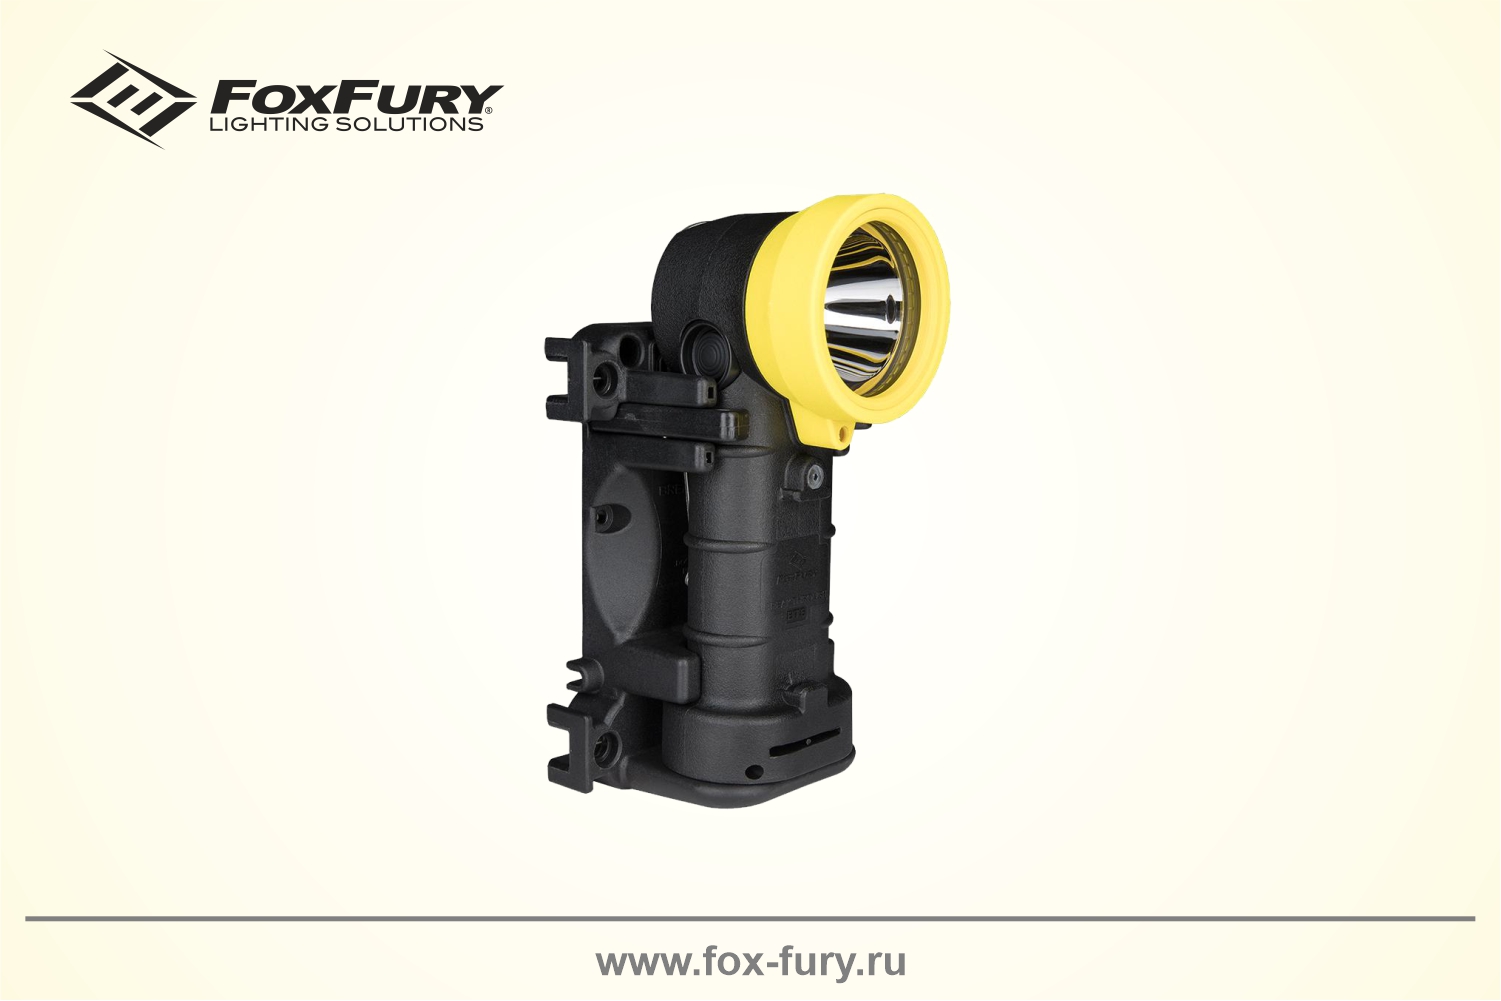 Универсальный светодиодный Г-образный фонарь 500 люмен FoxFury Breakthrough Rechargeable BTS 380-BTS-BYR